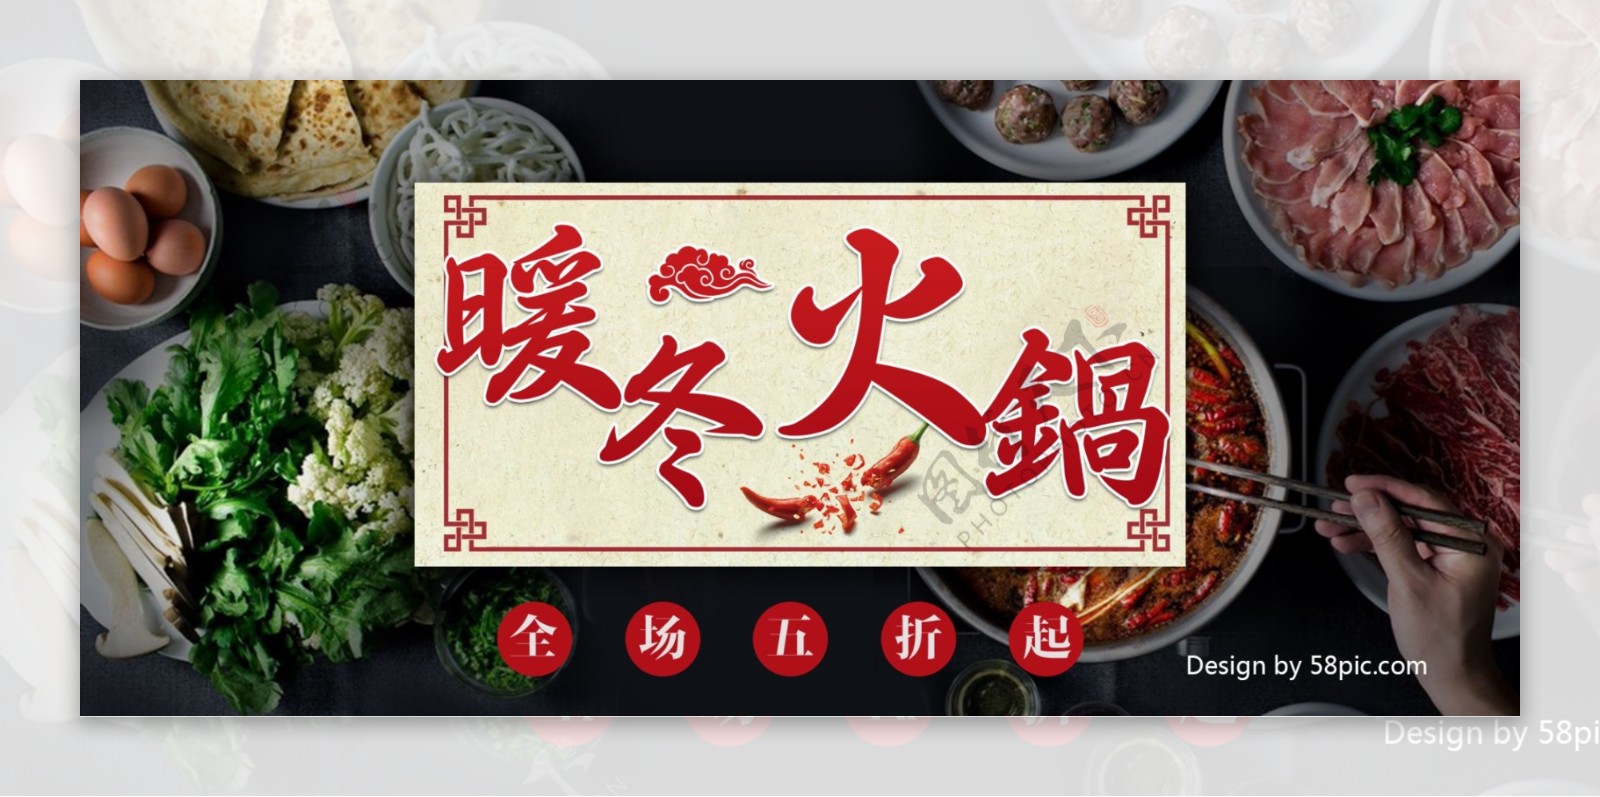 中国风电商淘宝火锅促销活动banner